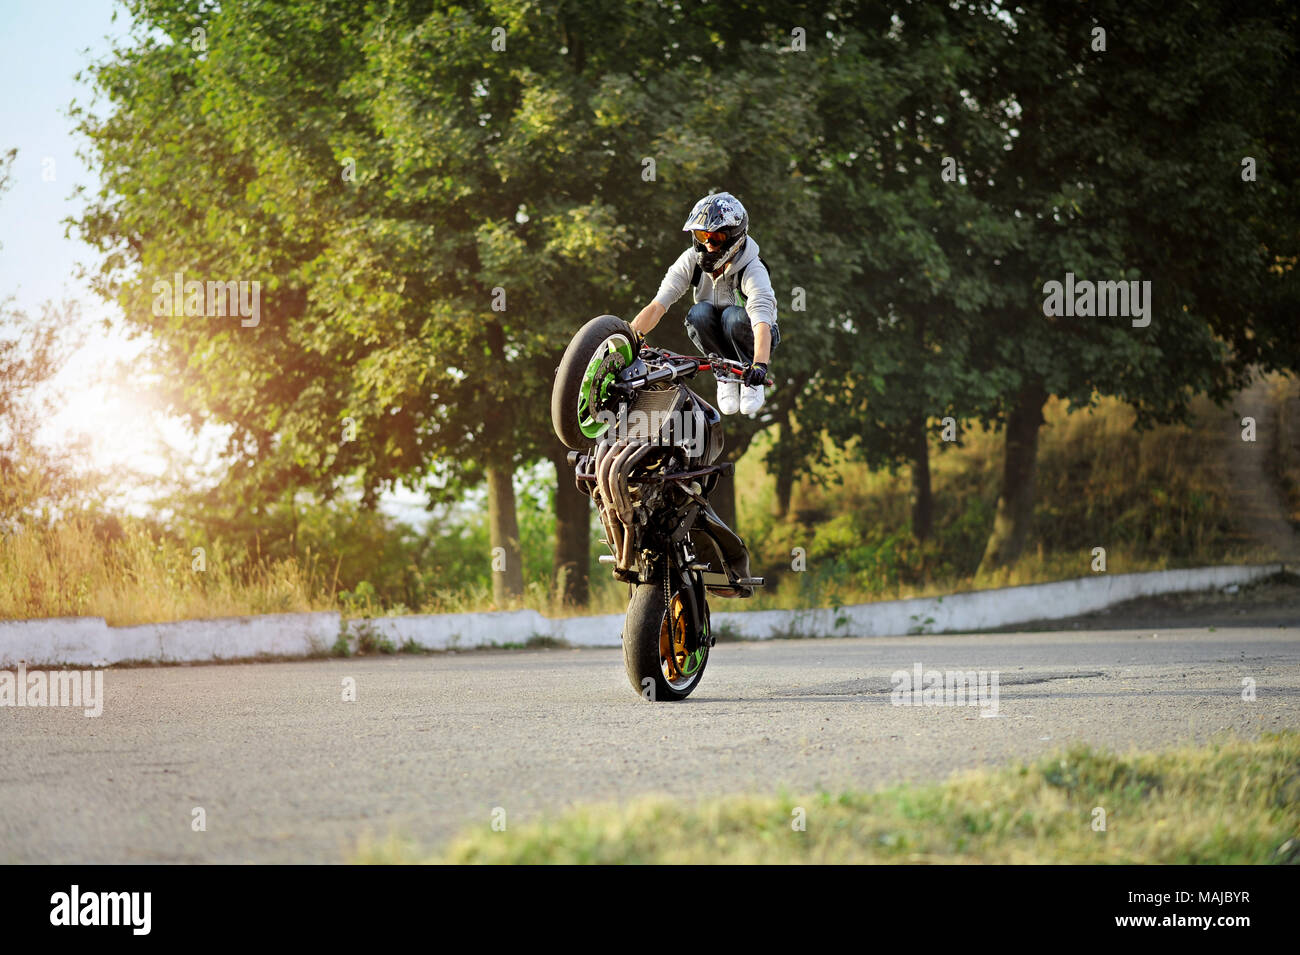 Ternopil, Ukraine - 28. August 2015: Männlich Biker ist Ausbildung in die Tricks auf Sport Motorrad auf Sommer zitieren Straße. Grüne Bäume im Hintergrund. Das Tragen von Helm. Stockfoto